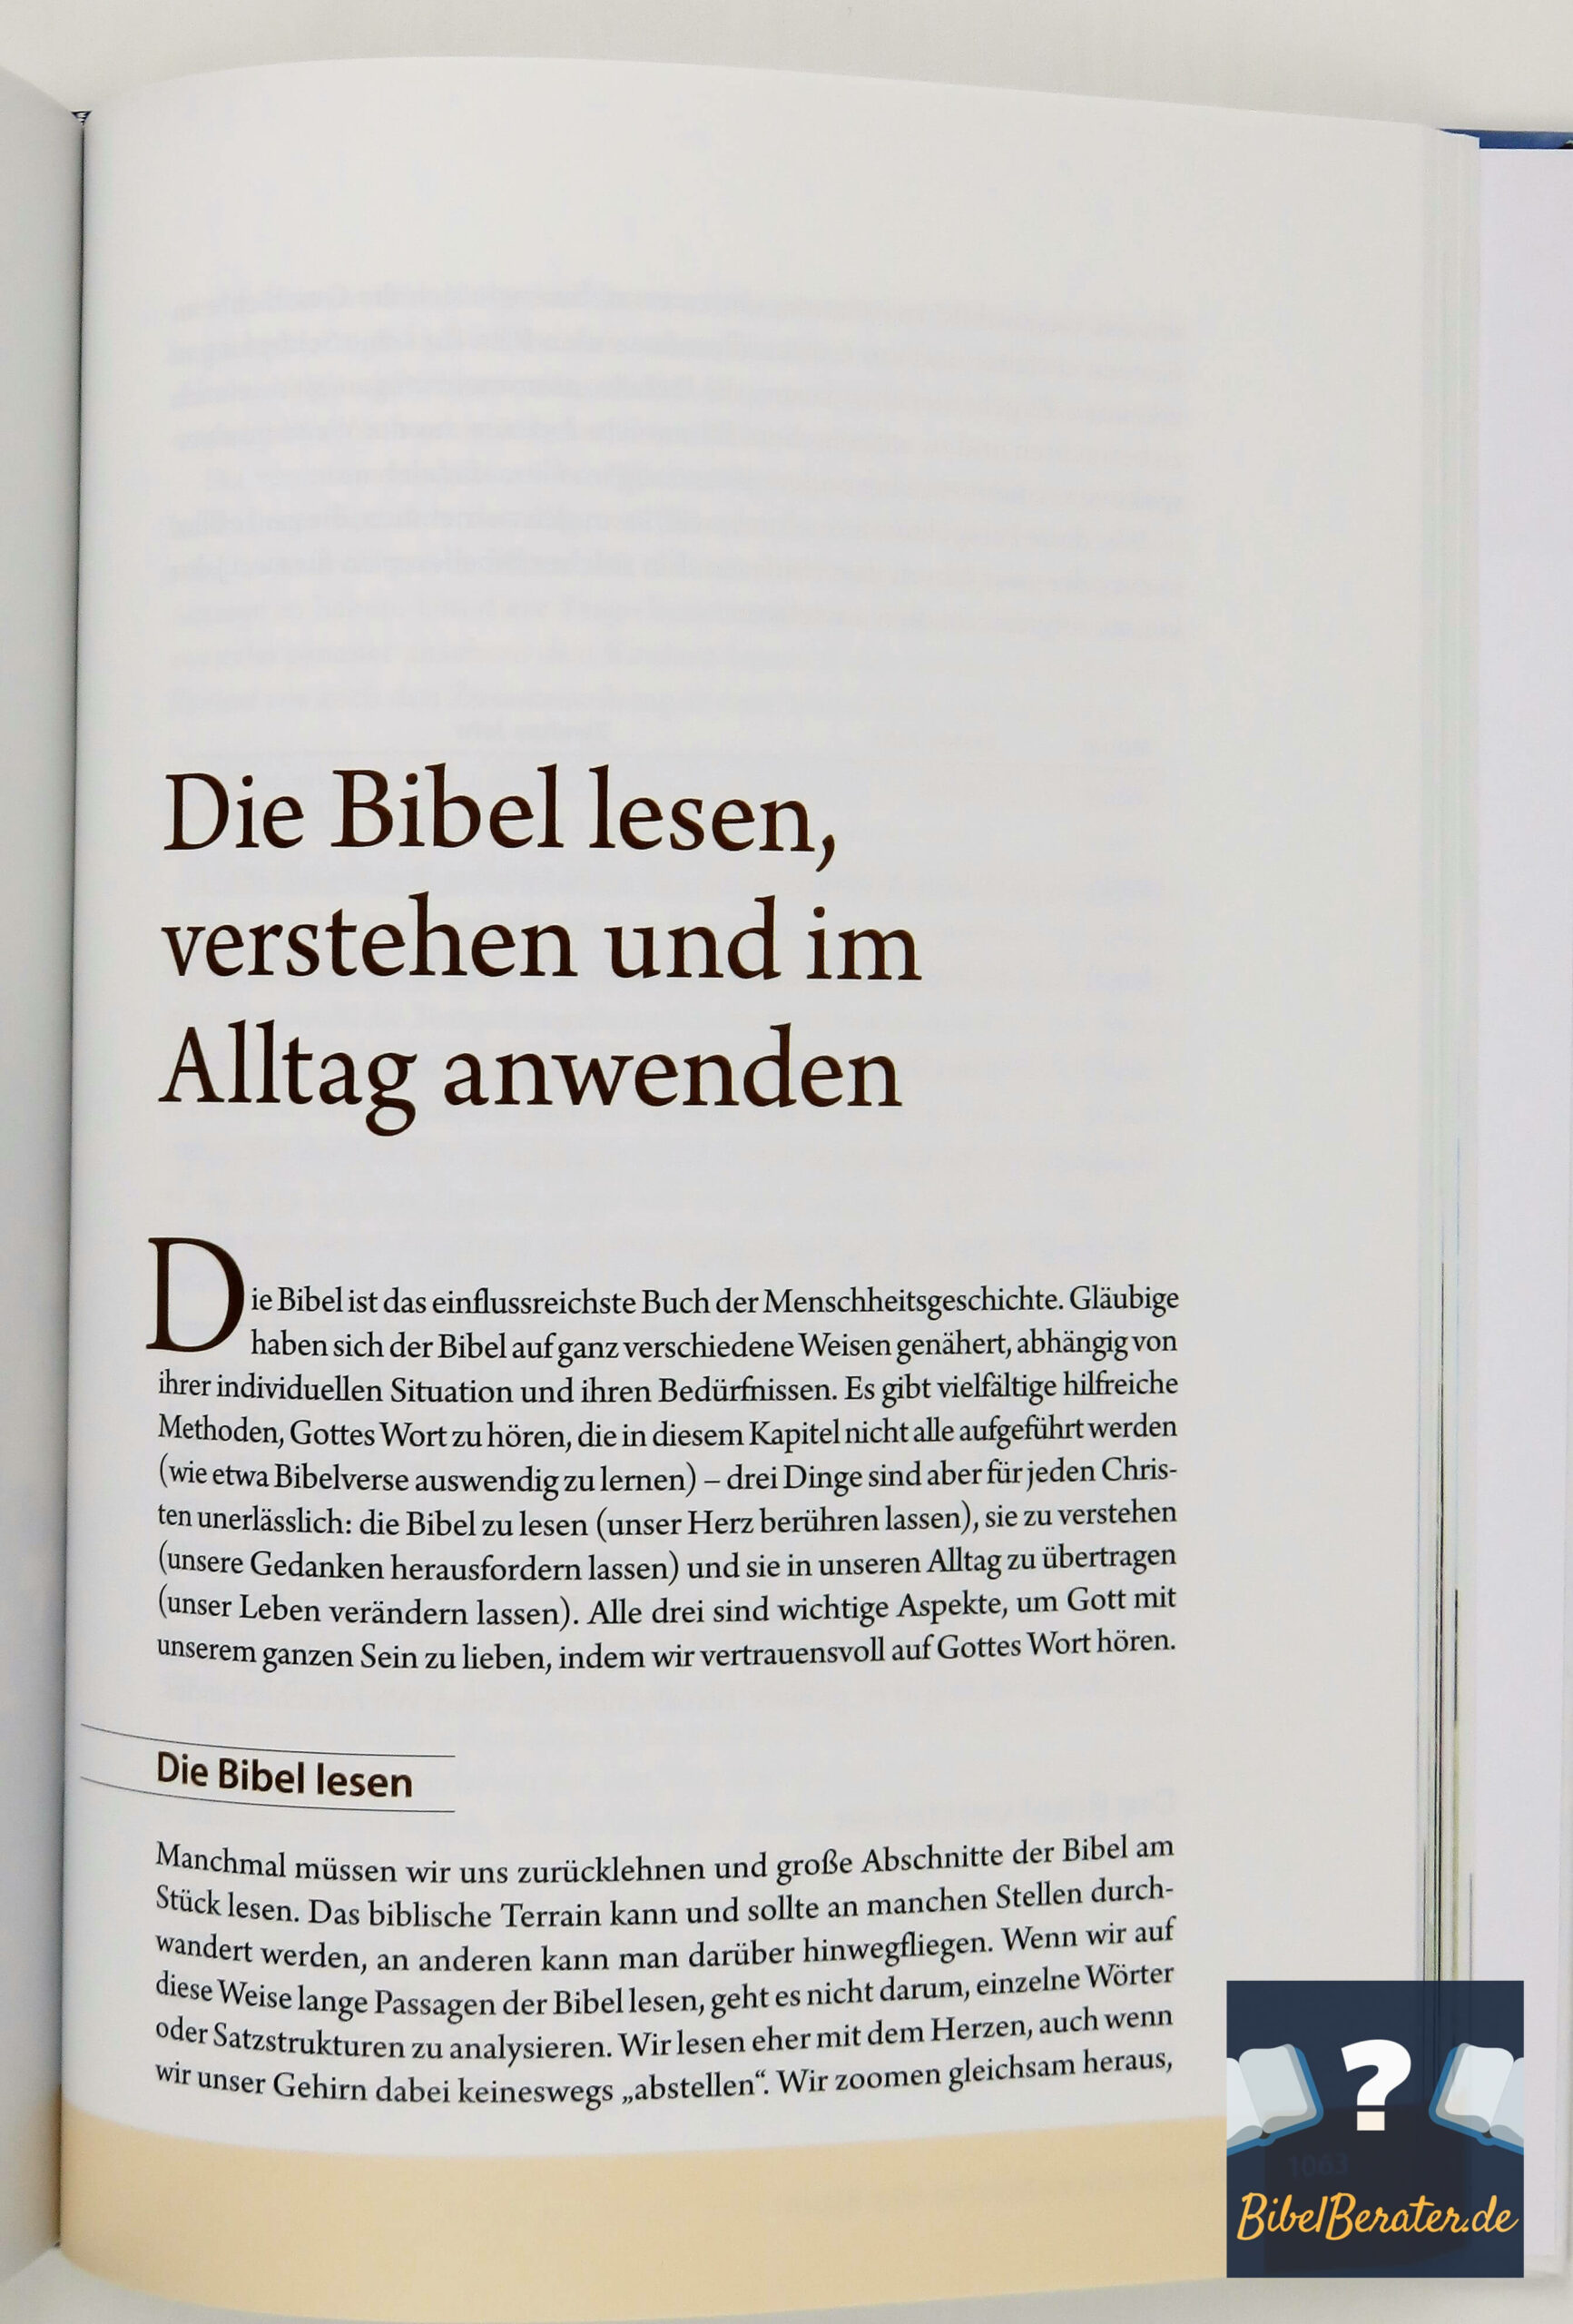 Das illustrierte Handbuch zur Bibel - Bibel Einführung